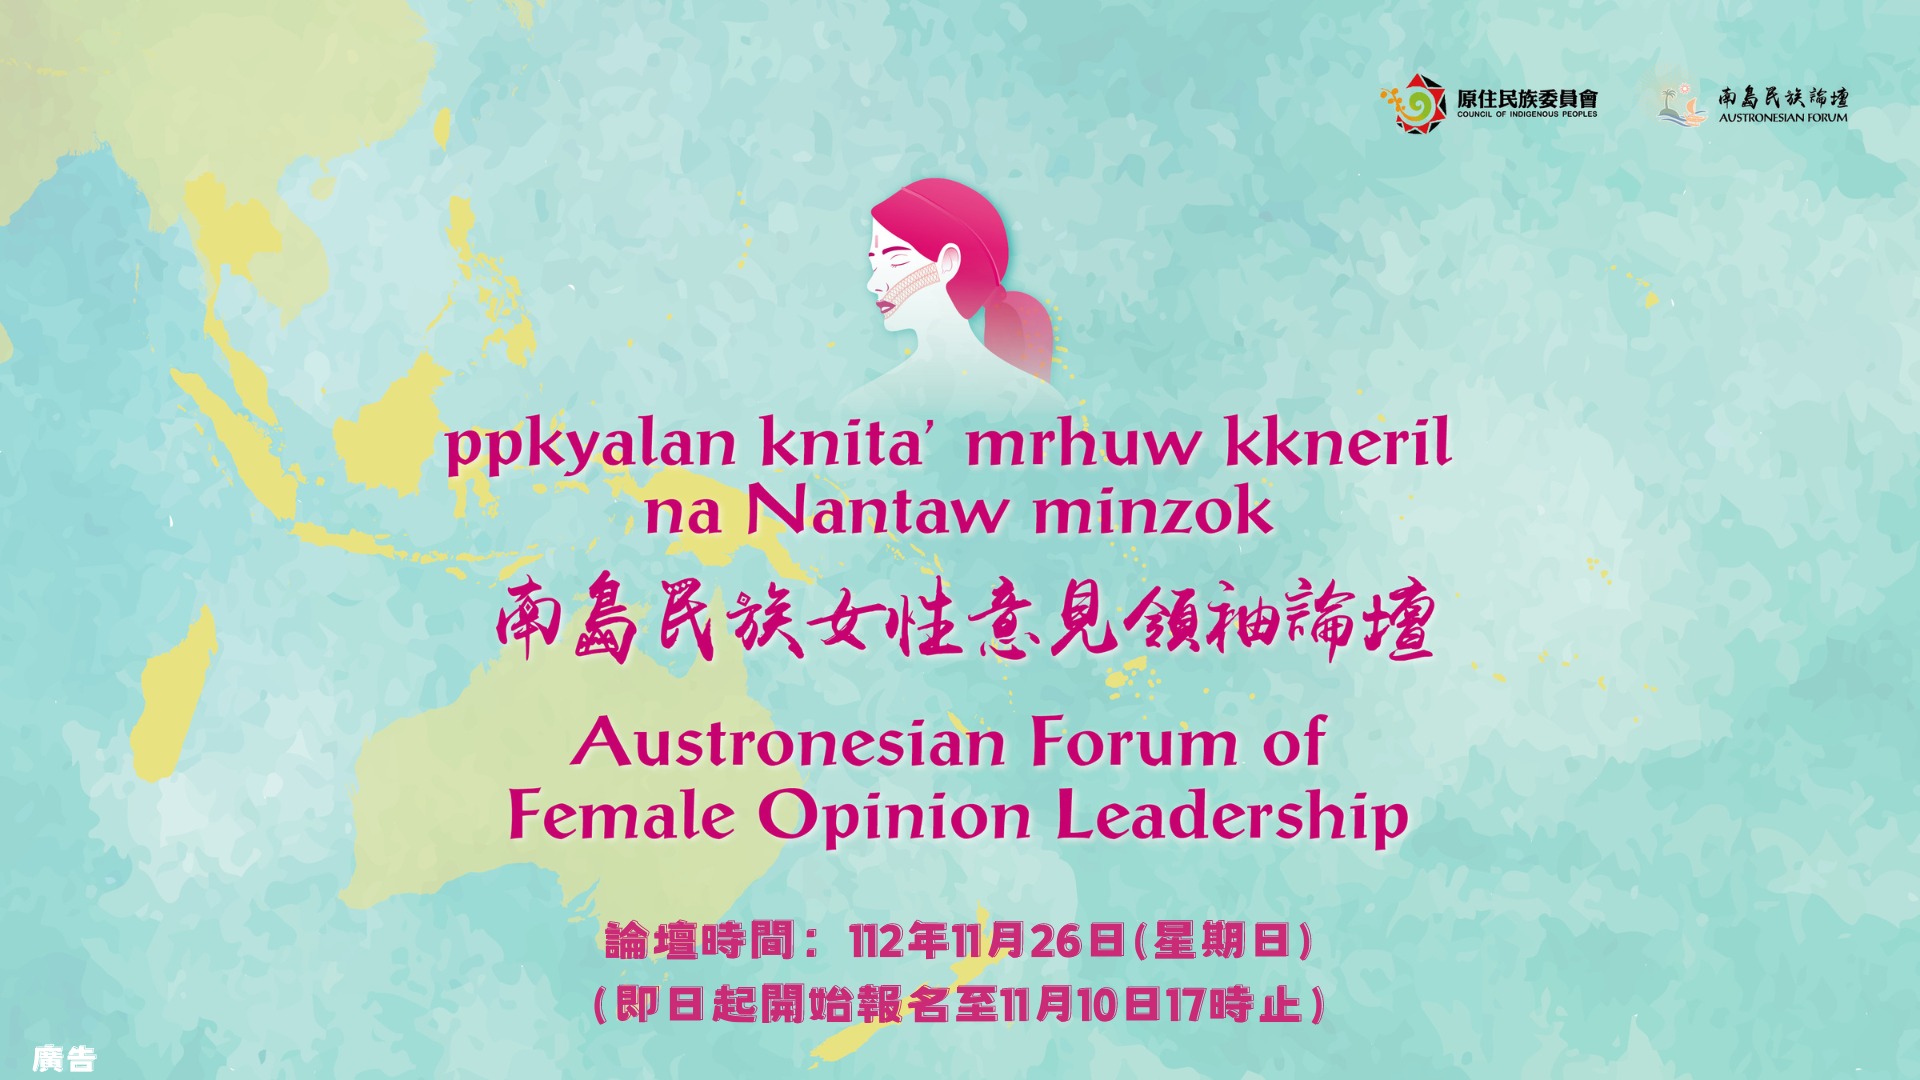 「2023年南島民族女性意見領袖論壇」海報